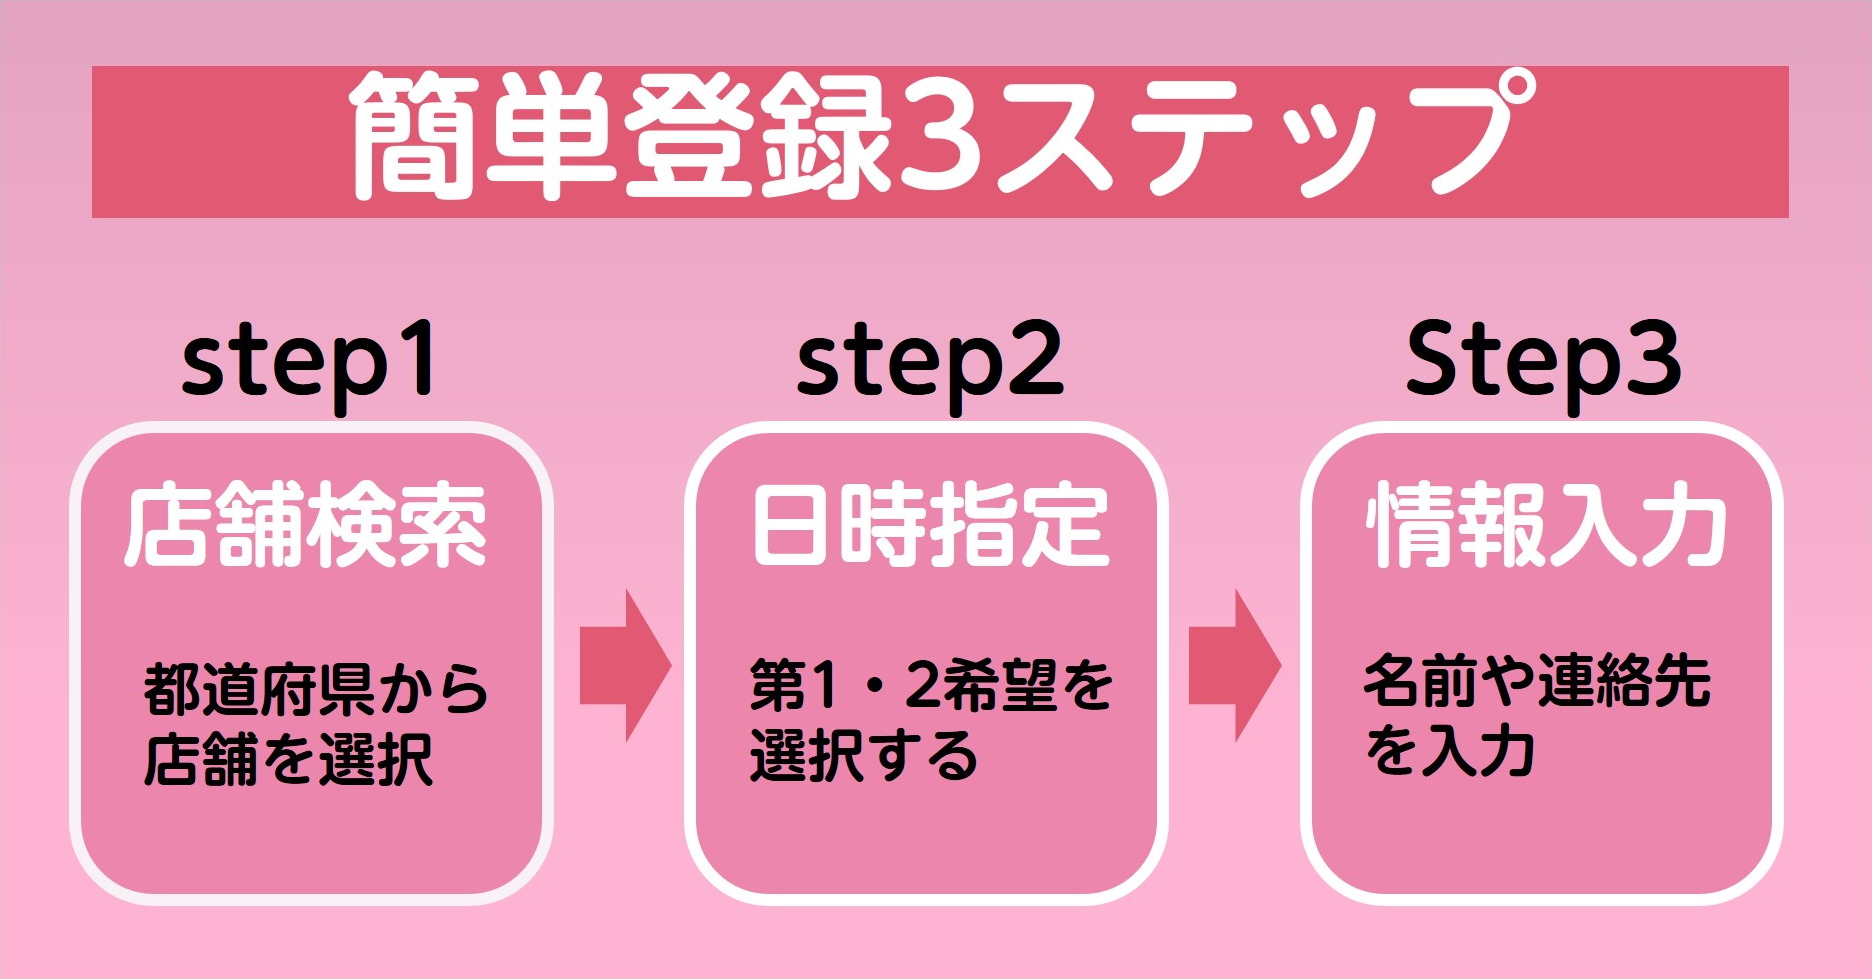 簡単登録3ステップ